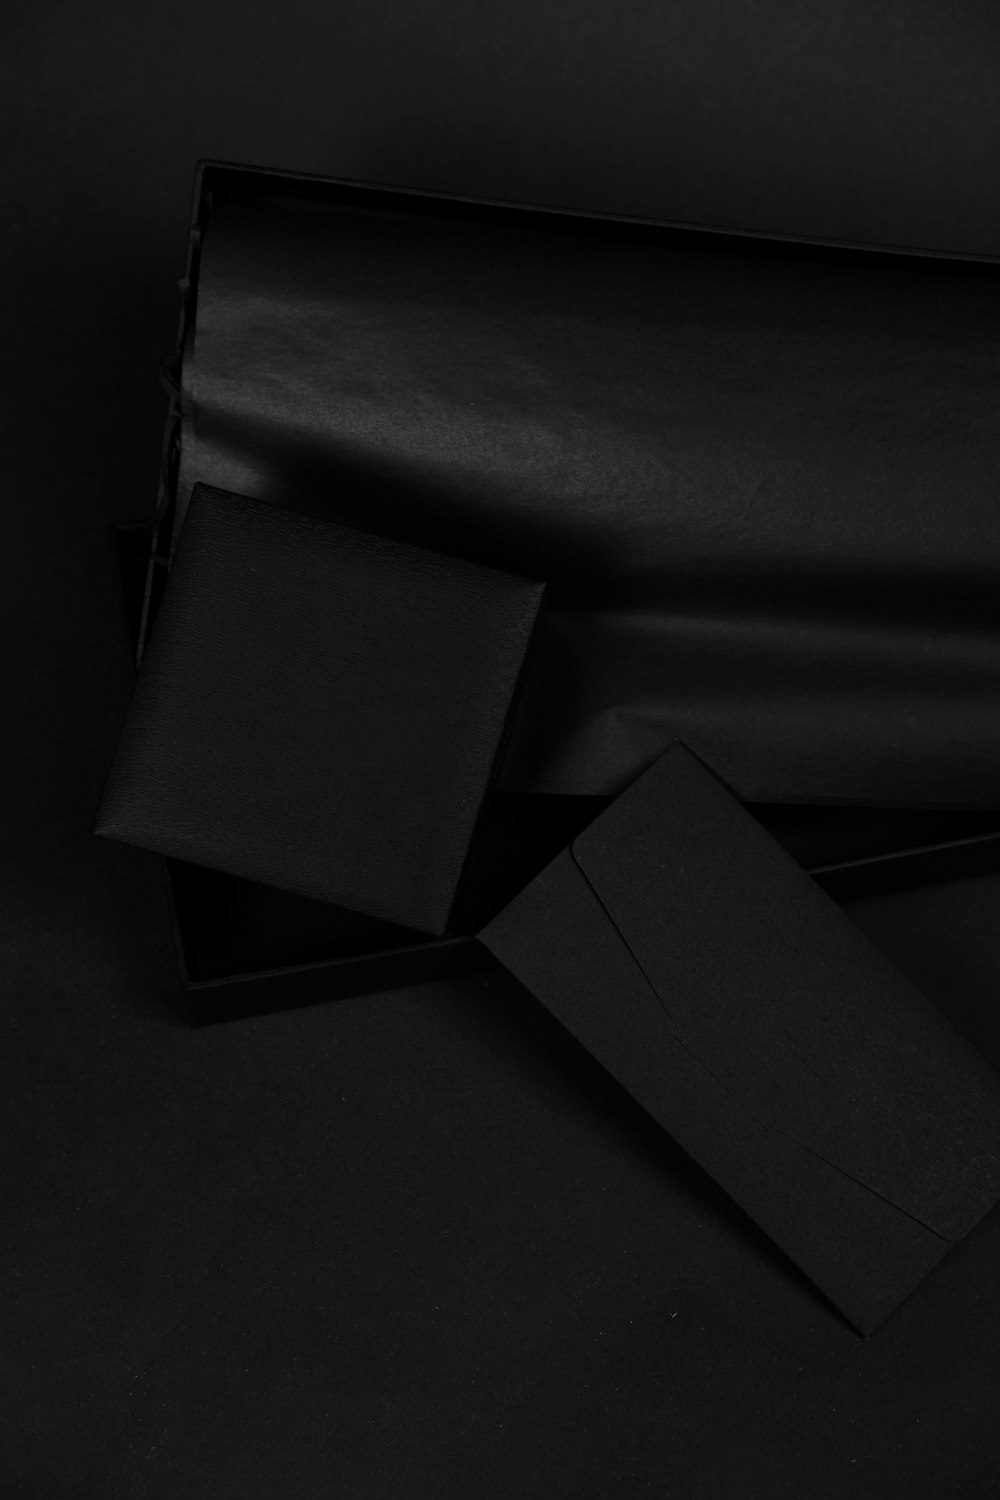 black box on black textile